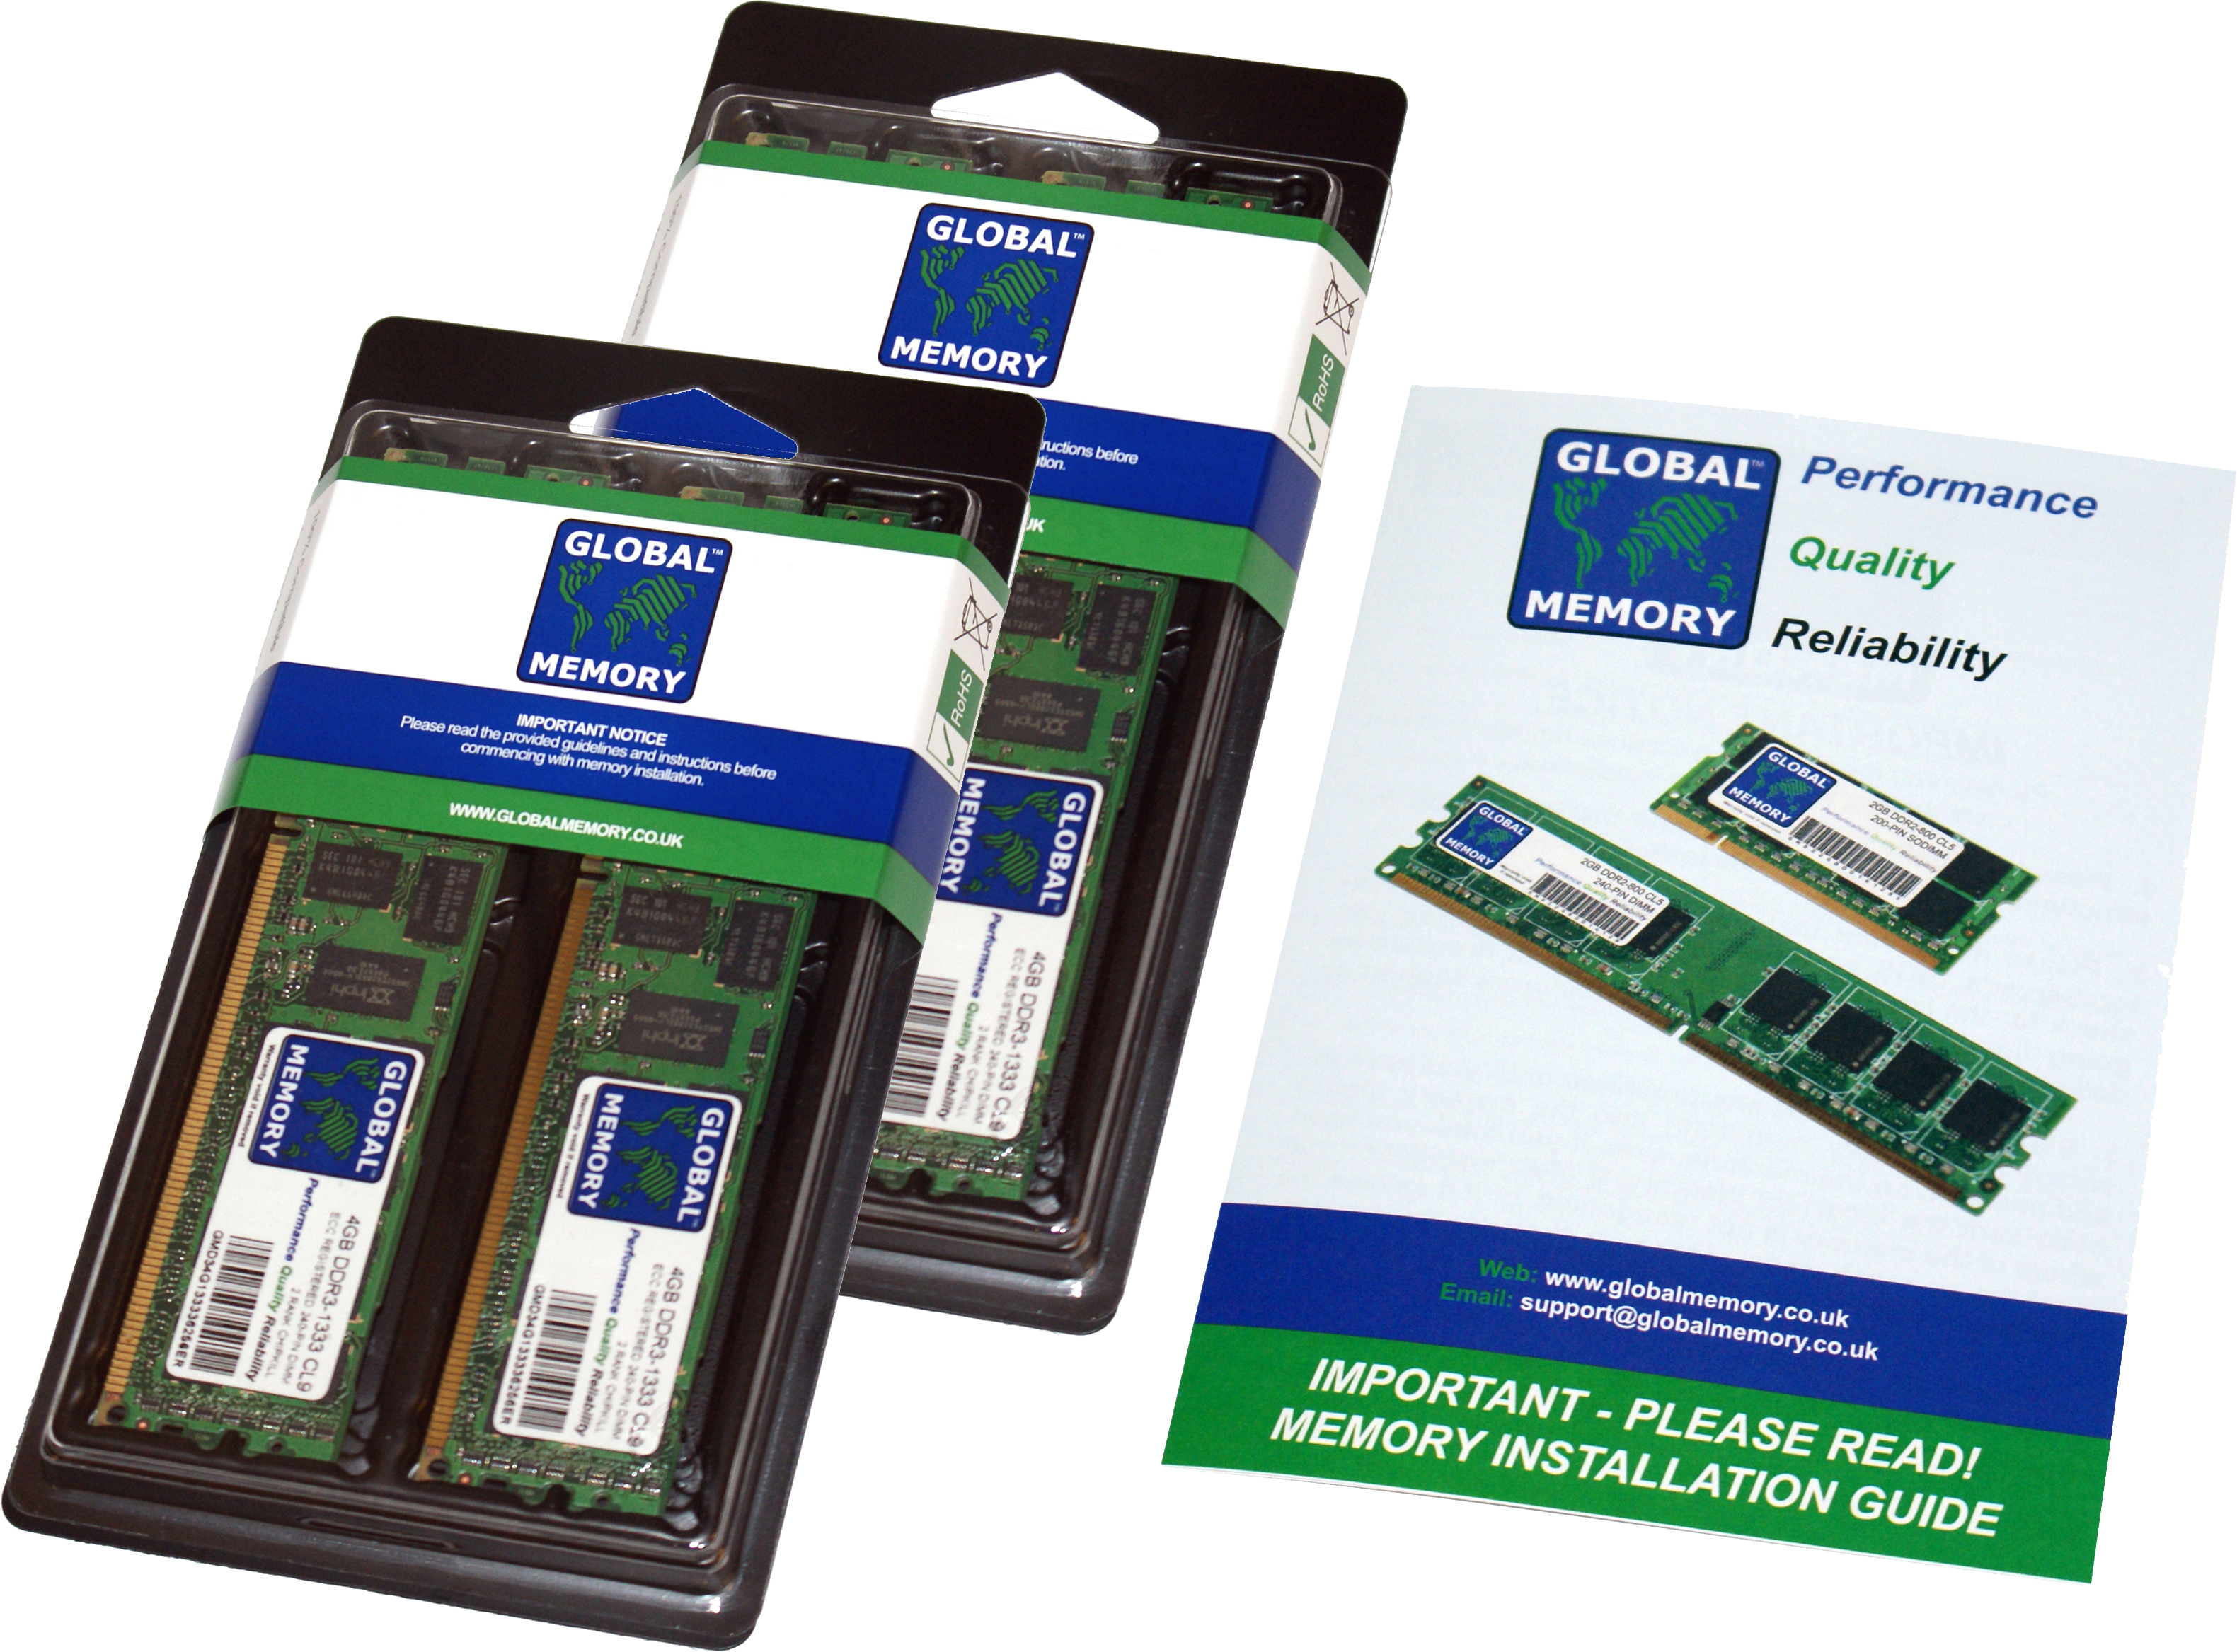 64GB (4 x 16GB) DDR4 2400MHz PC4-19200 288-PIN ECC REGISTERED DIMM (RDIMM) MEMORY RAM KIT FOR HEWLETT-PACKARD SERVERS/WORKSTATIONS (8 RANK KIT CHIPKILL)